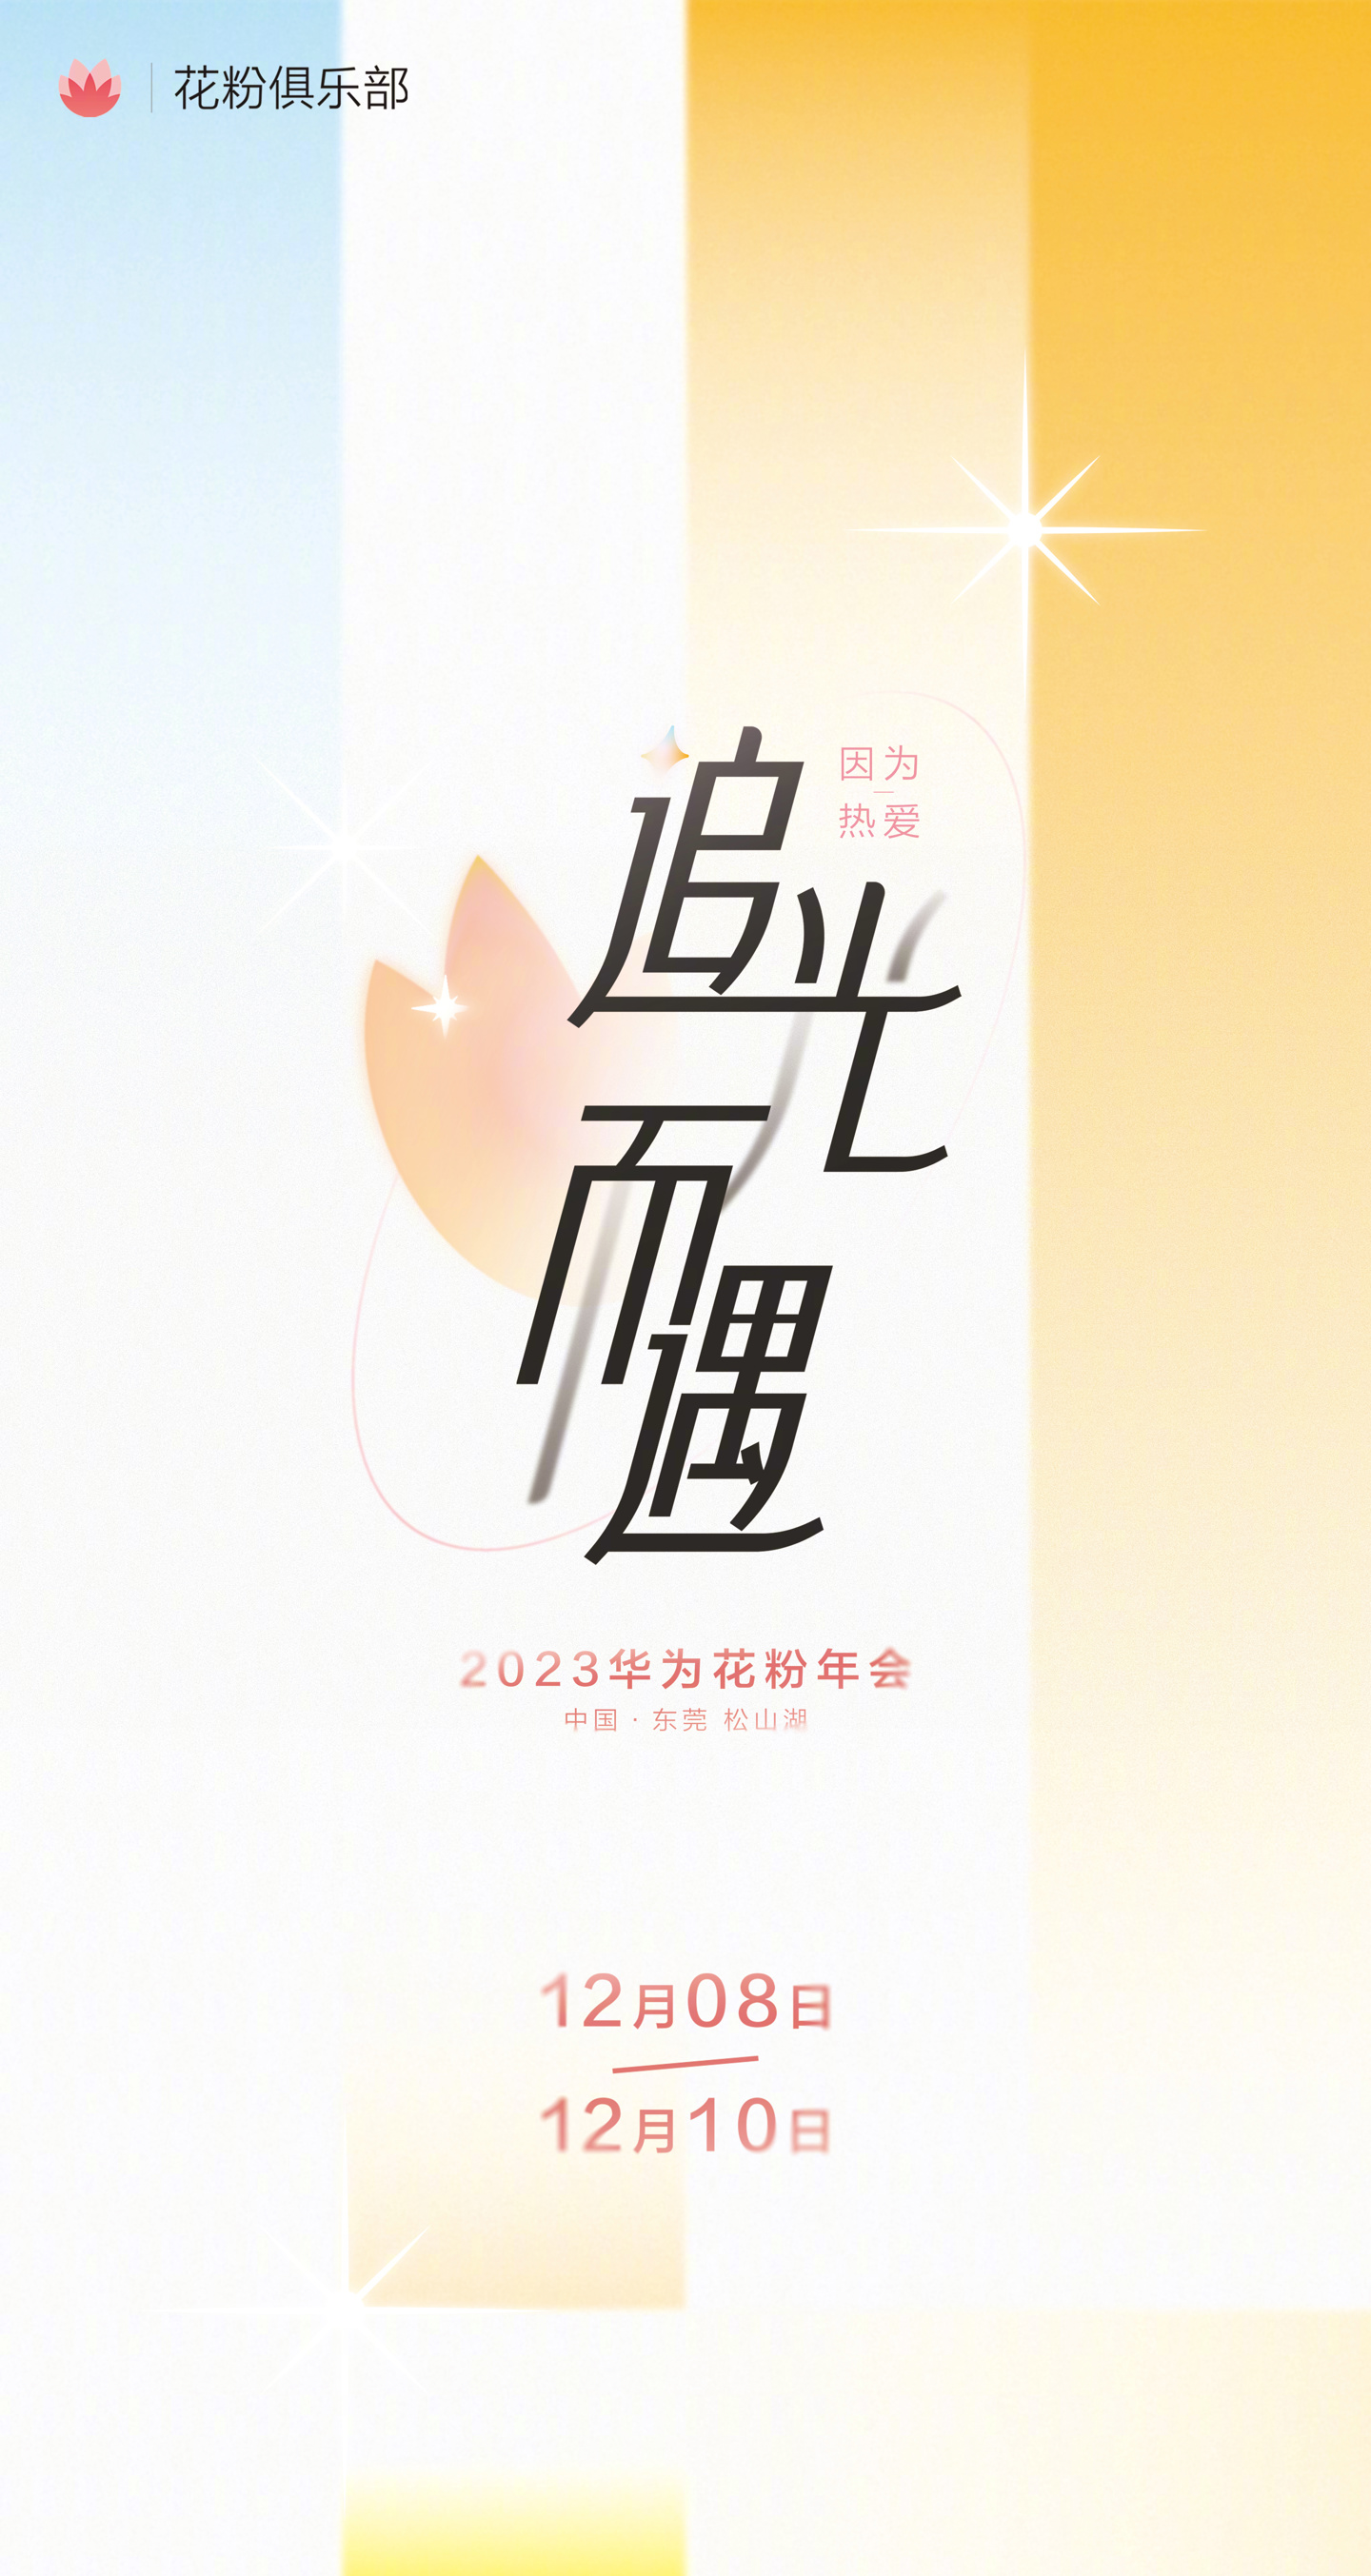 华为花粉年会将于 2023 年 12 月 8 日至 10 日举行